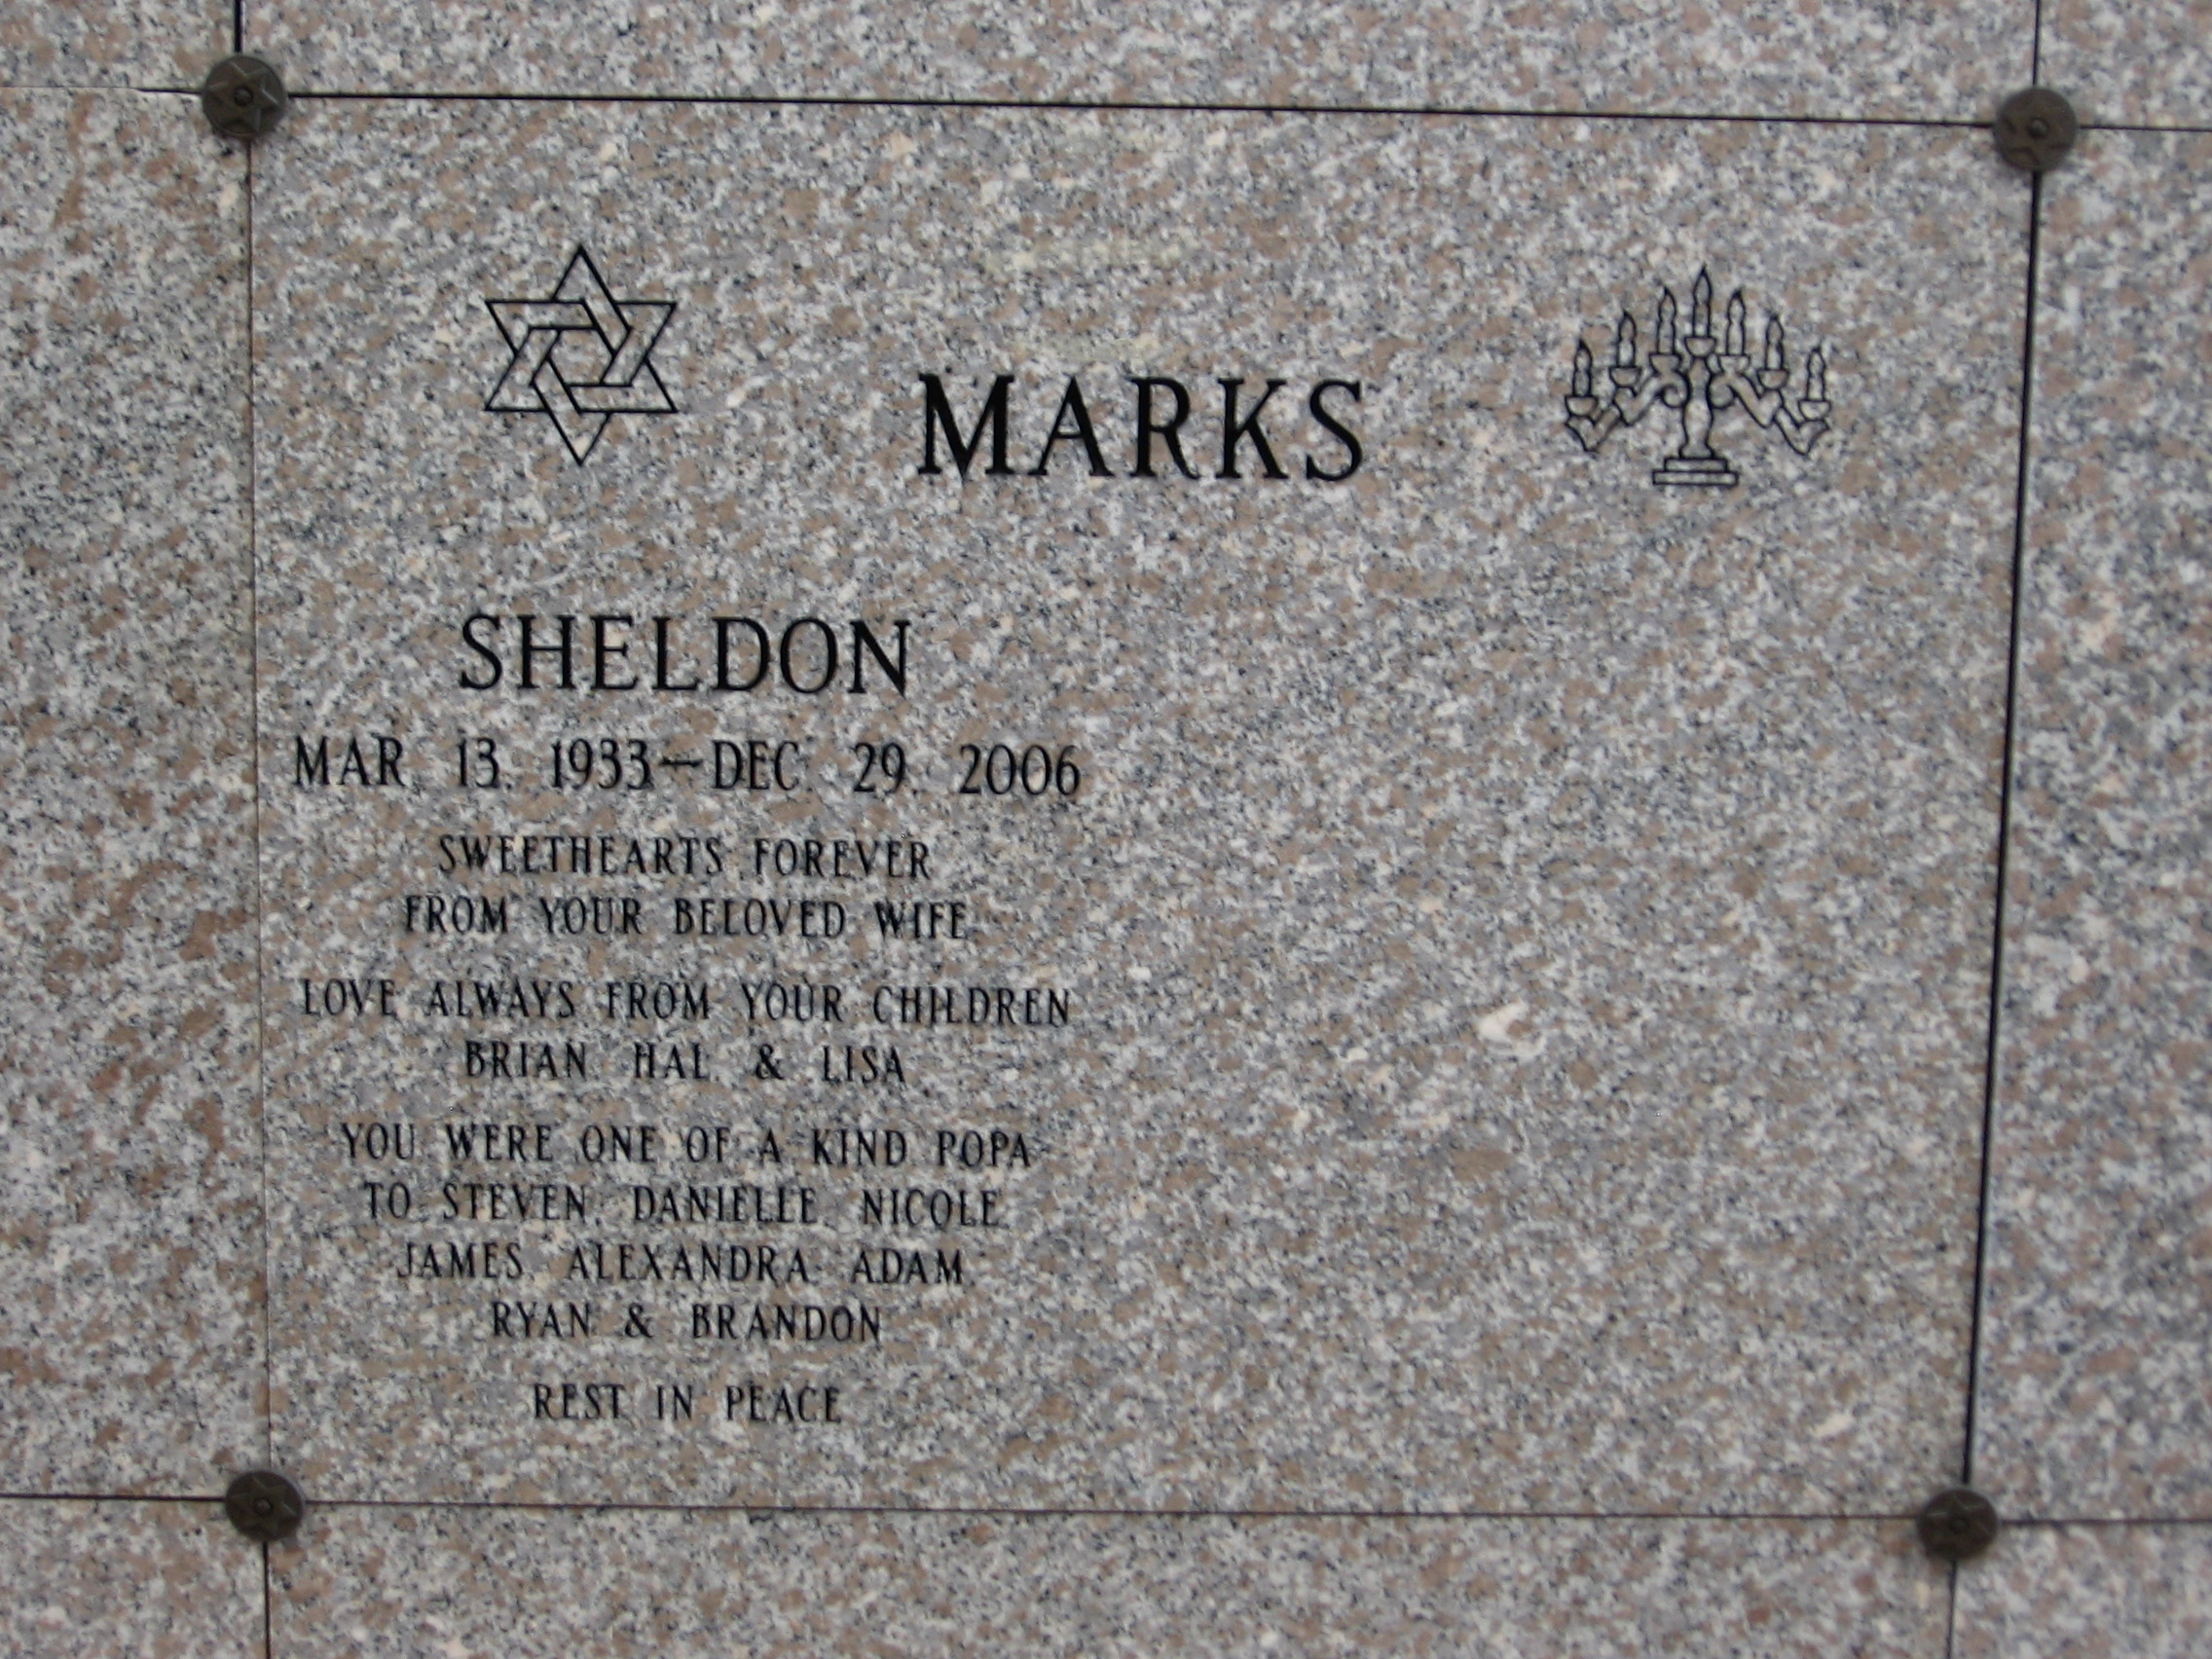 Sheldon Marks